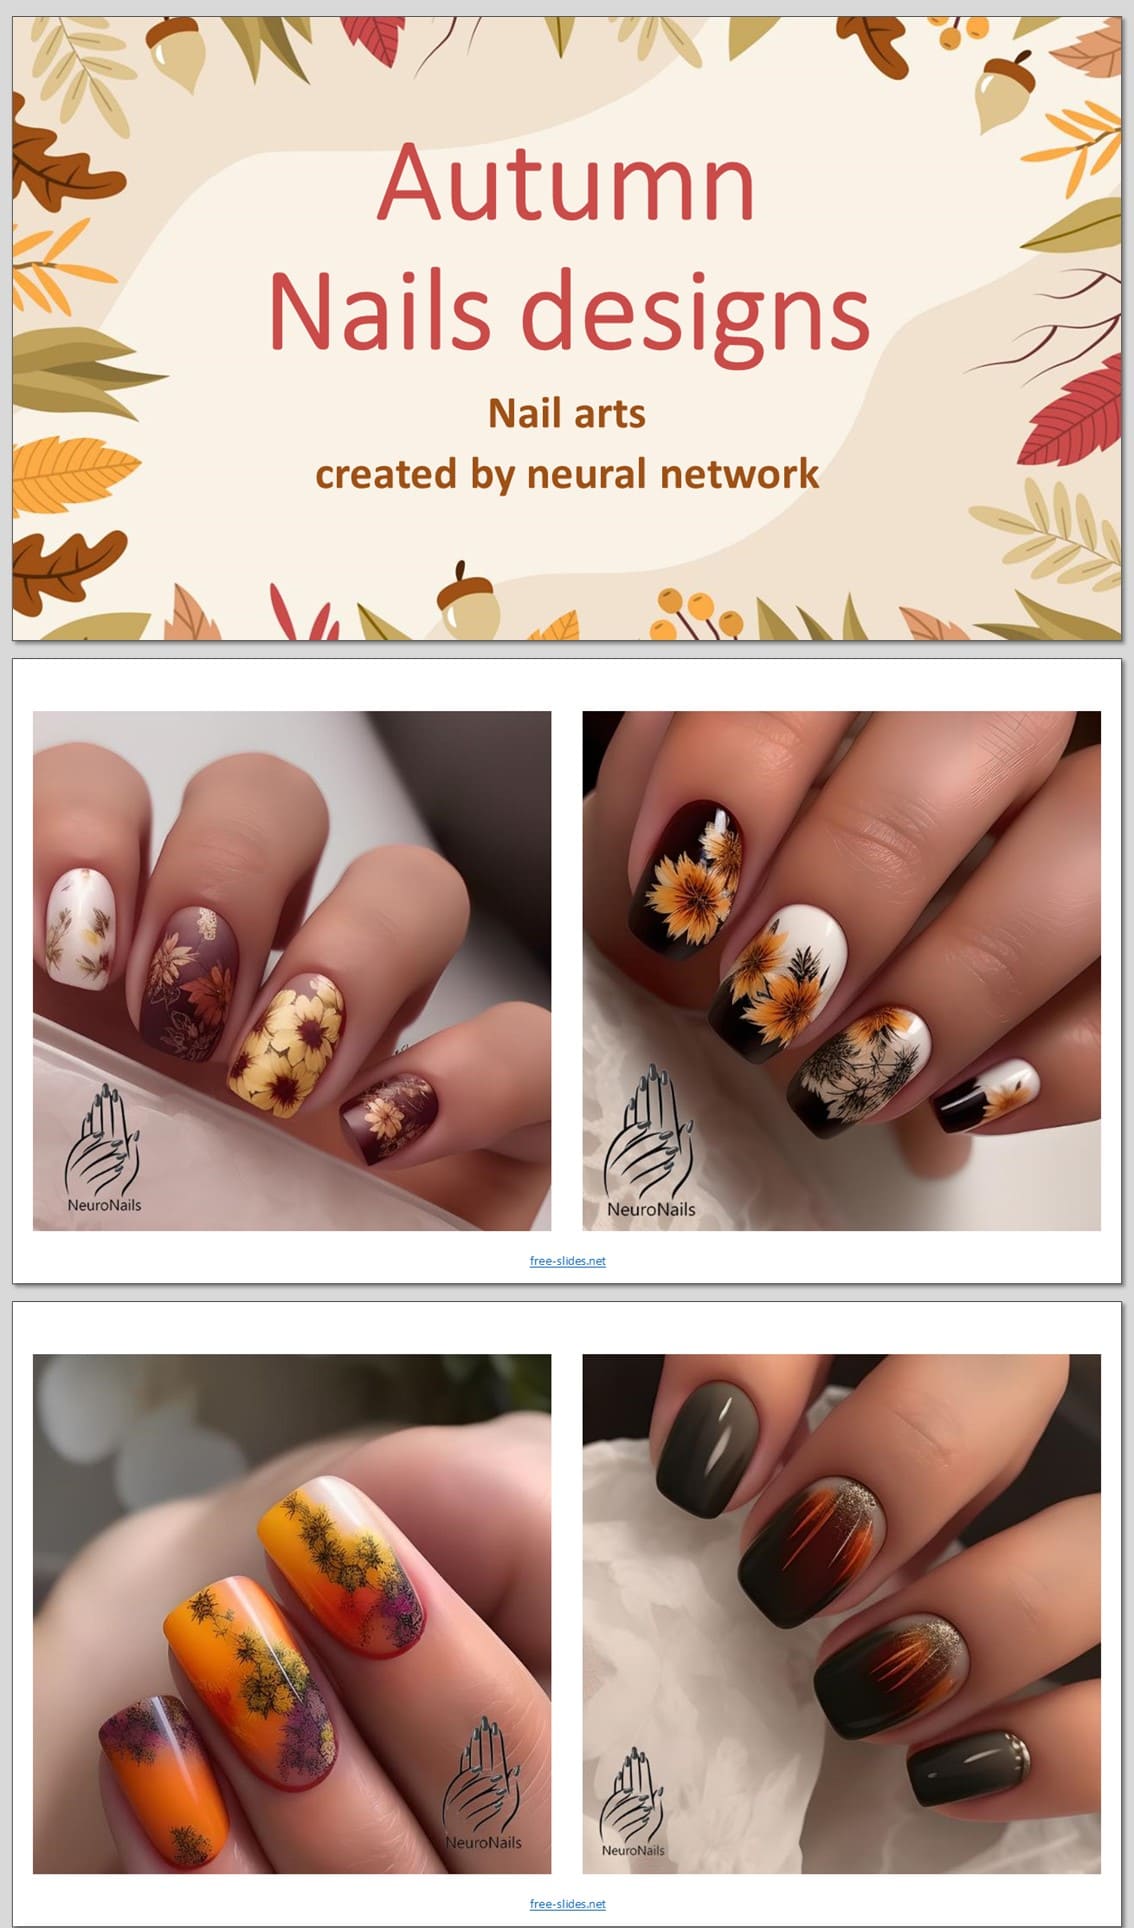 Neural network creates fall nail designs